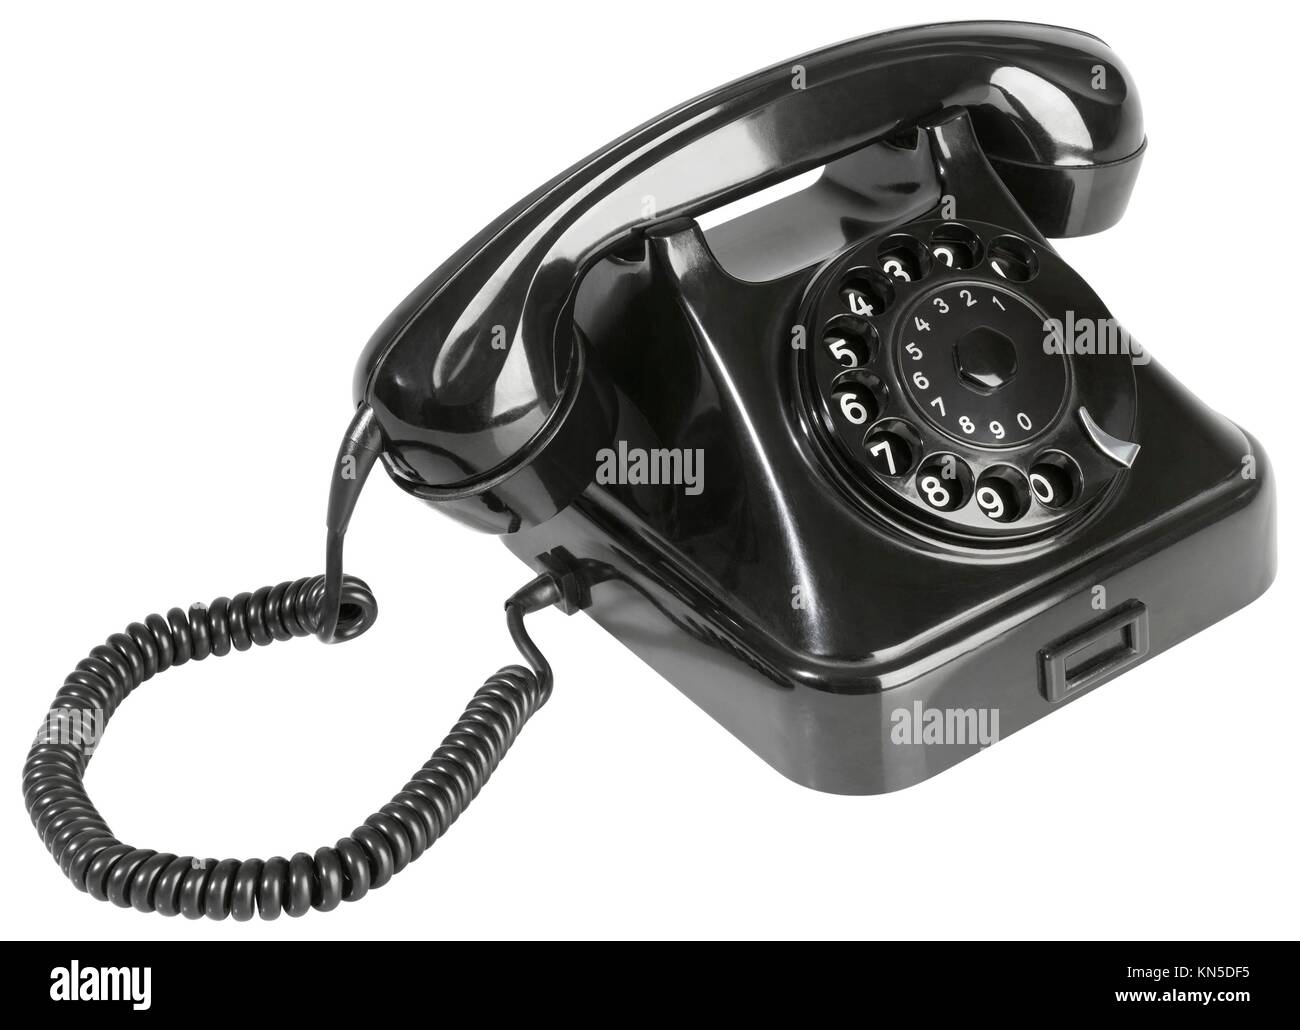 Black Rotary Phone Isolated on White Background. Stock Photo